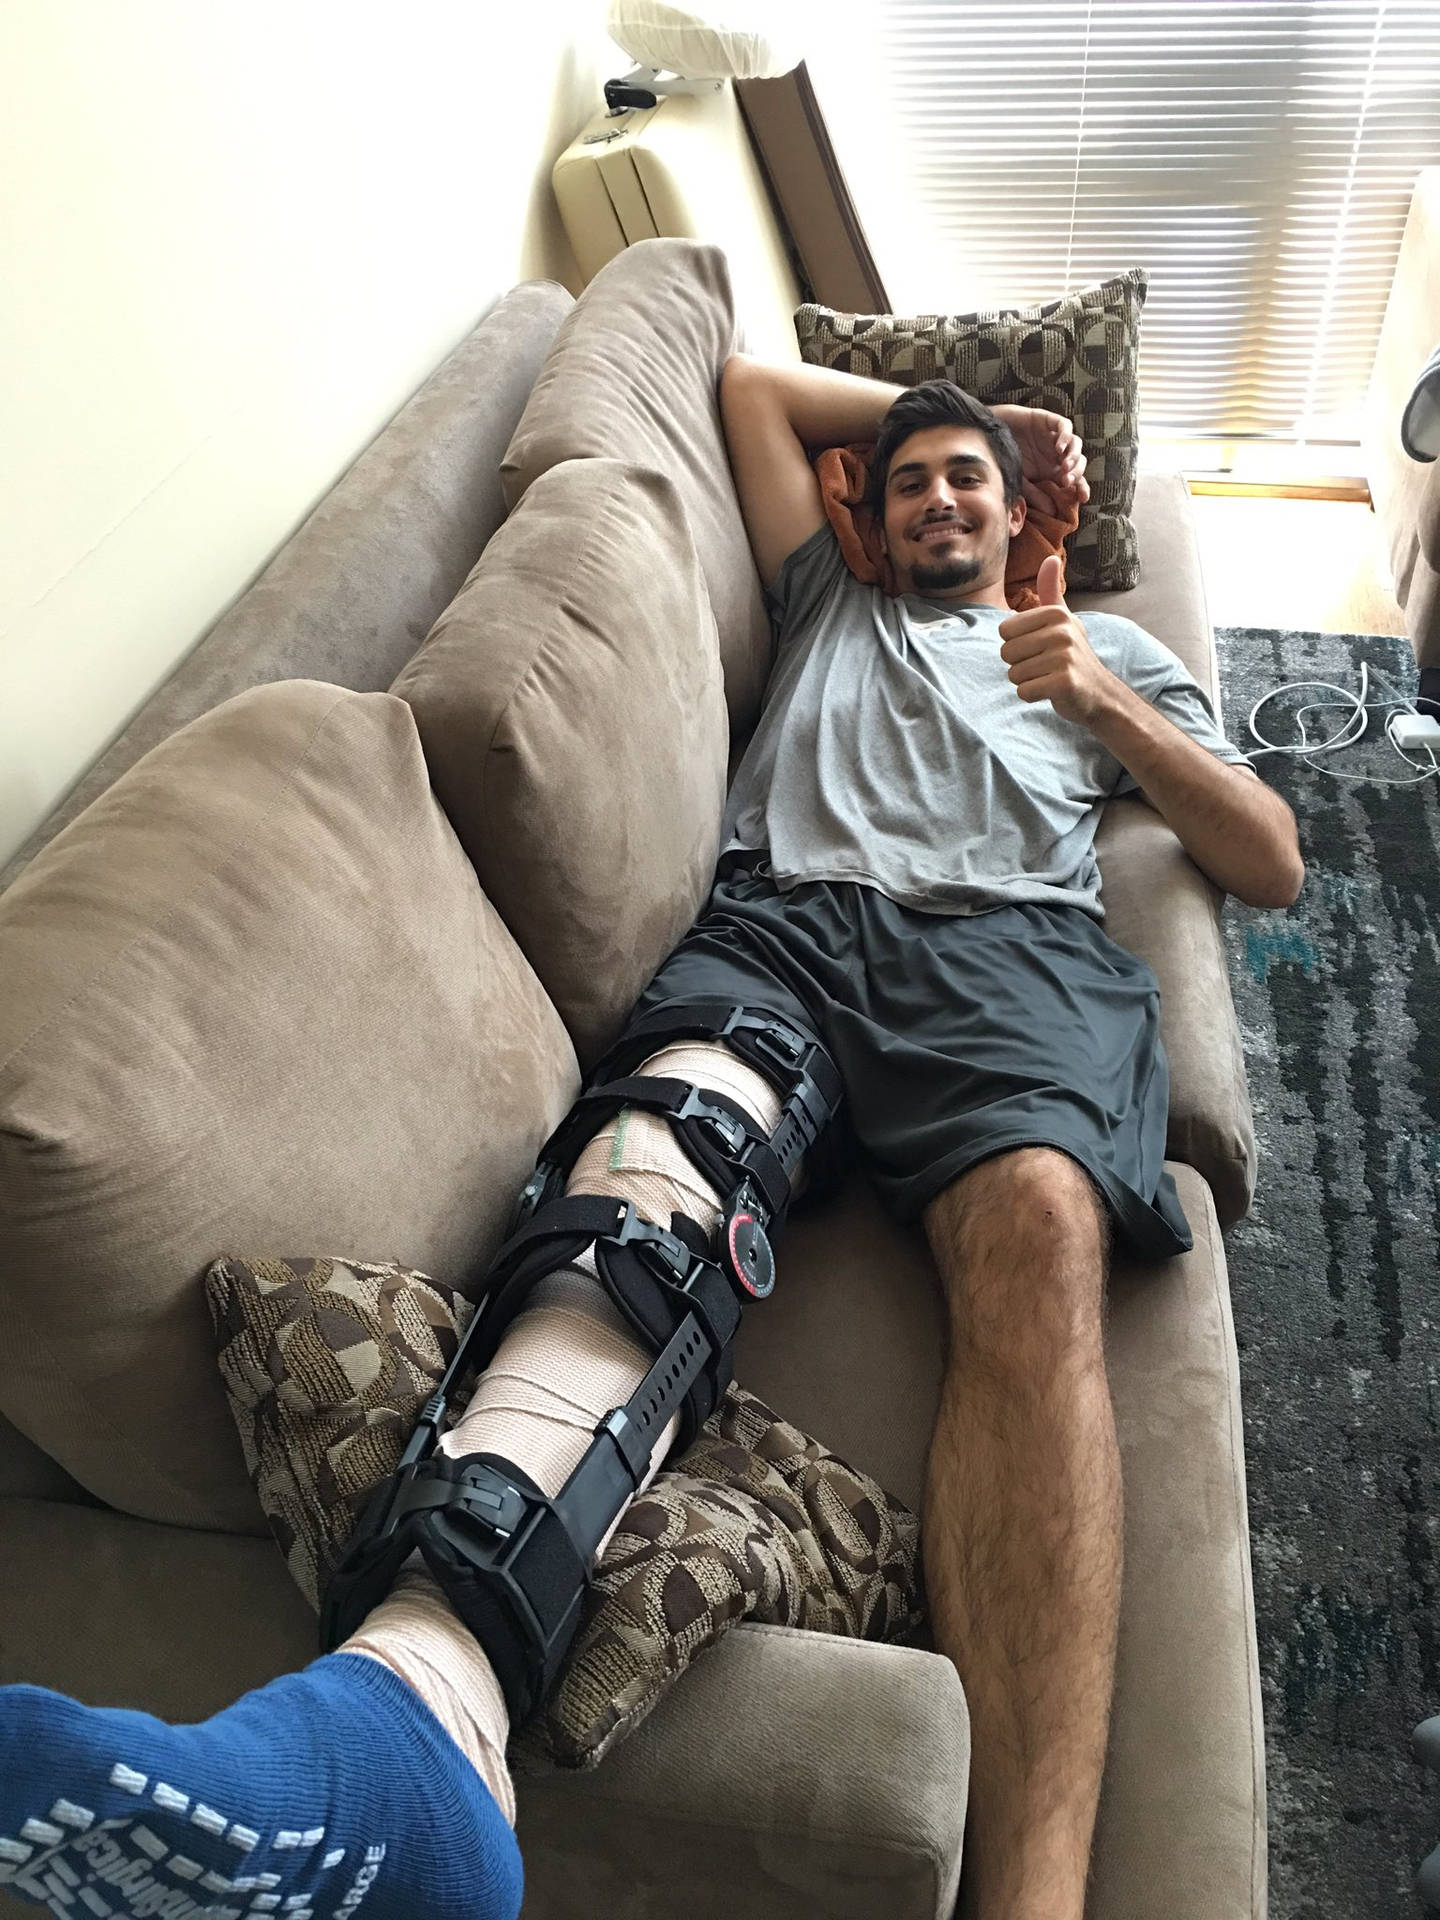 Zacheflin Verletzte Sein Bein. Wallpaper